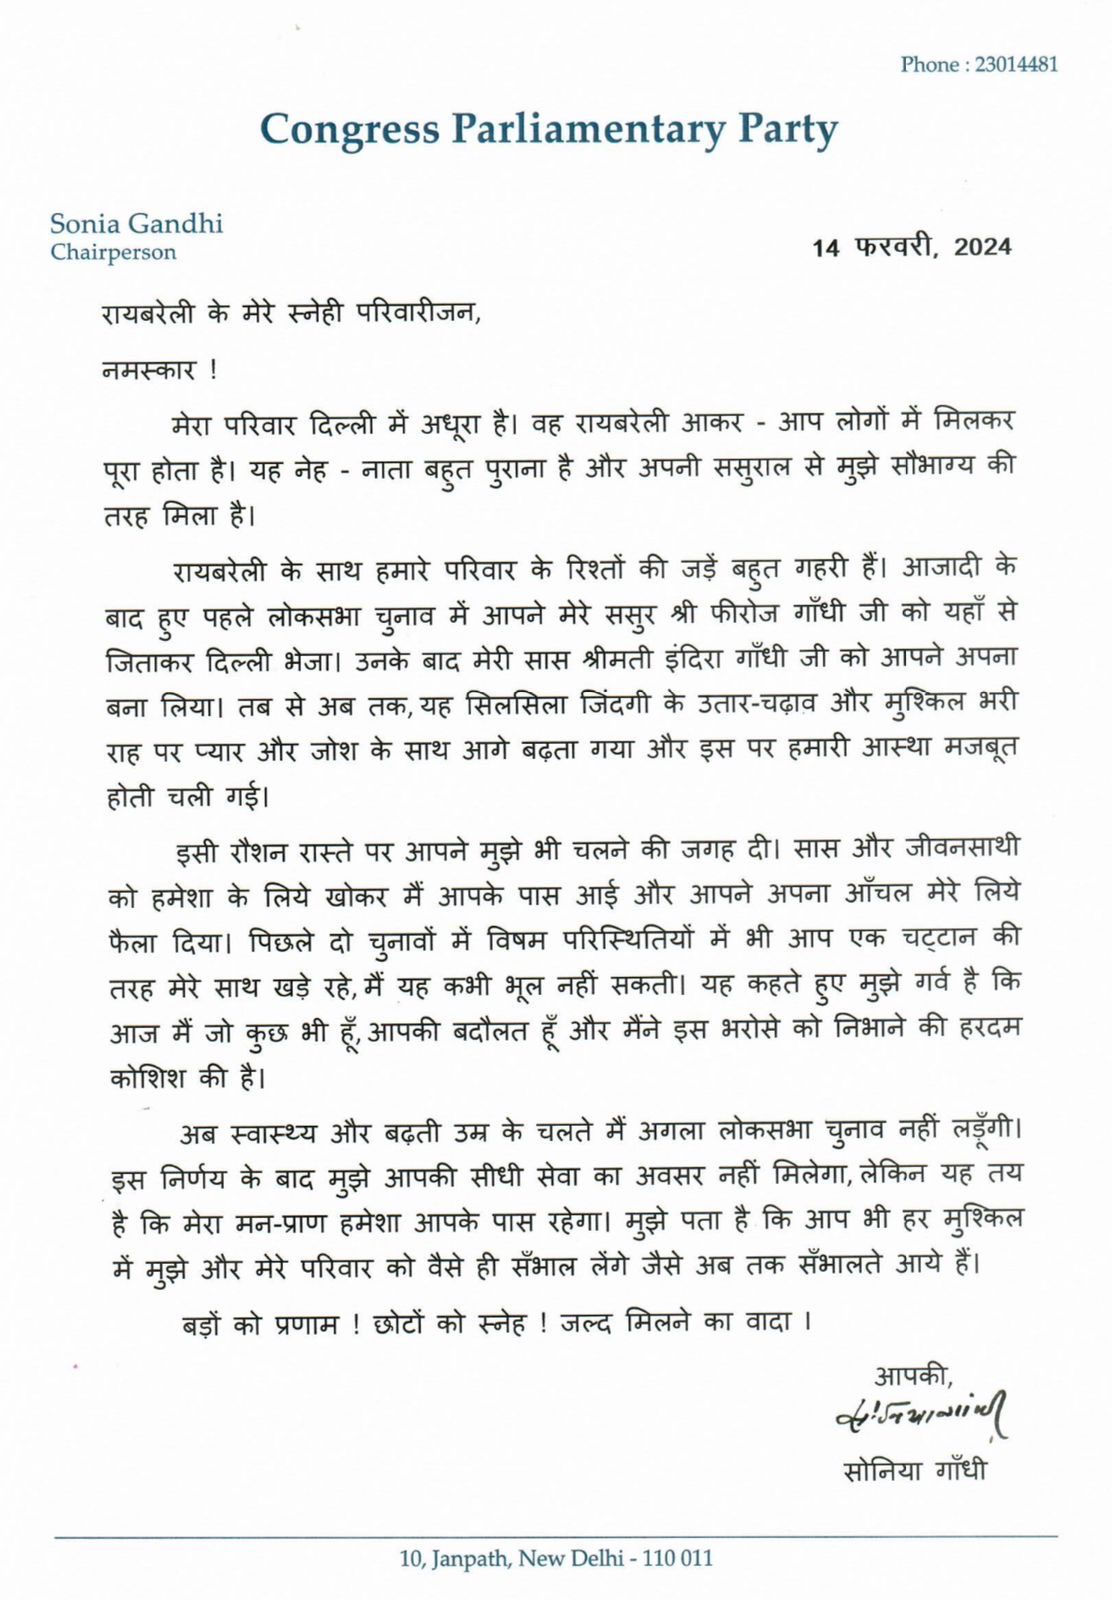 सोनिया गांधी की ओर से लिखी गई चिट्ठी.